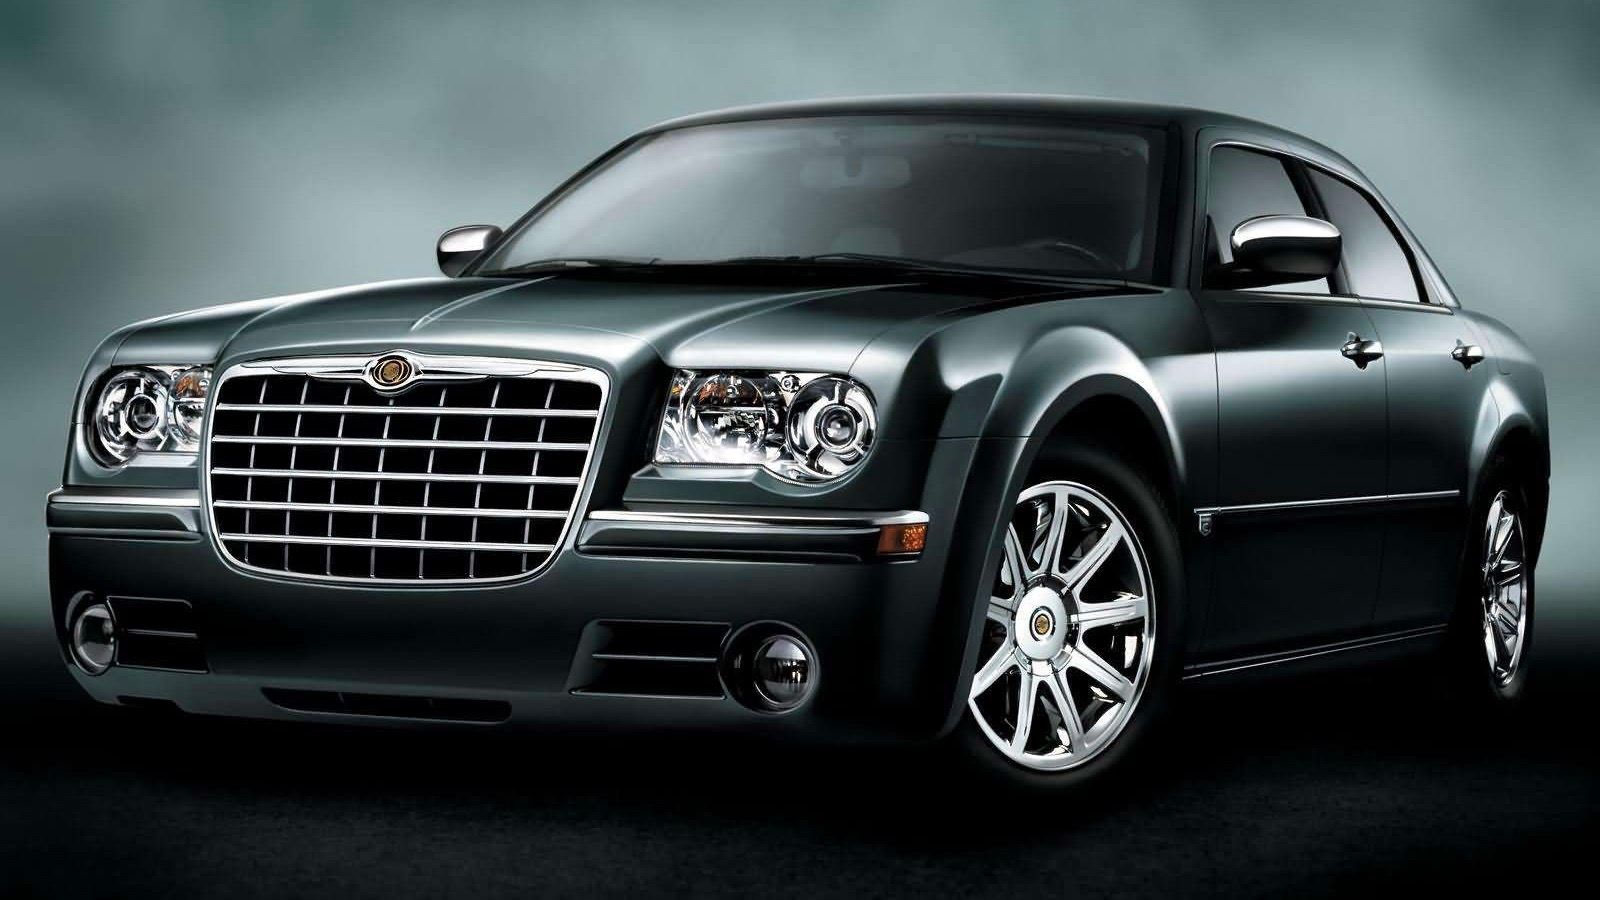 2005 black Chrysler 300 